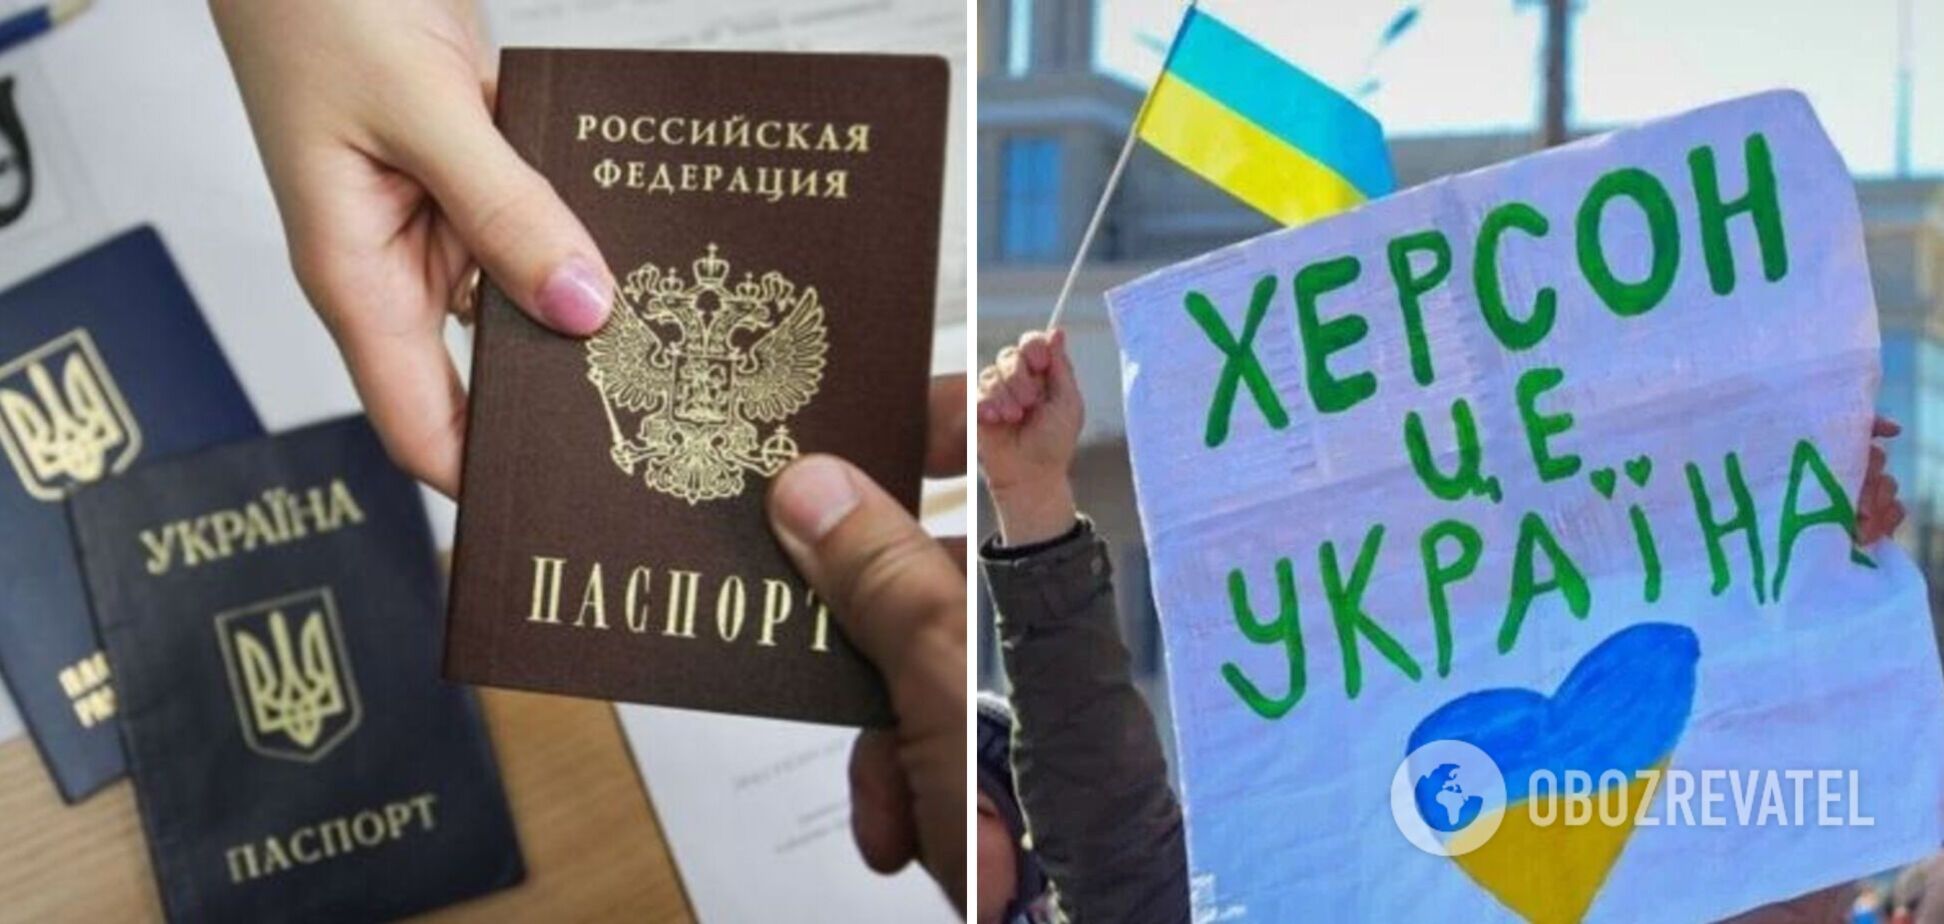 У Херсоні розповсюджують фейки про величезні черги за паспортами РФ